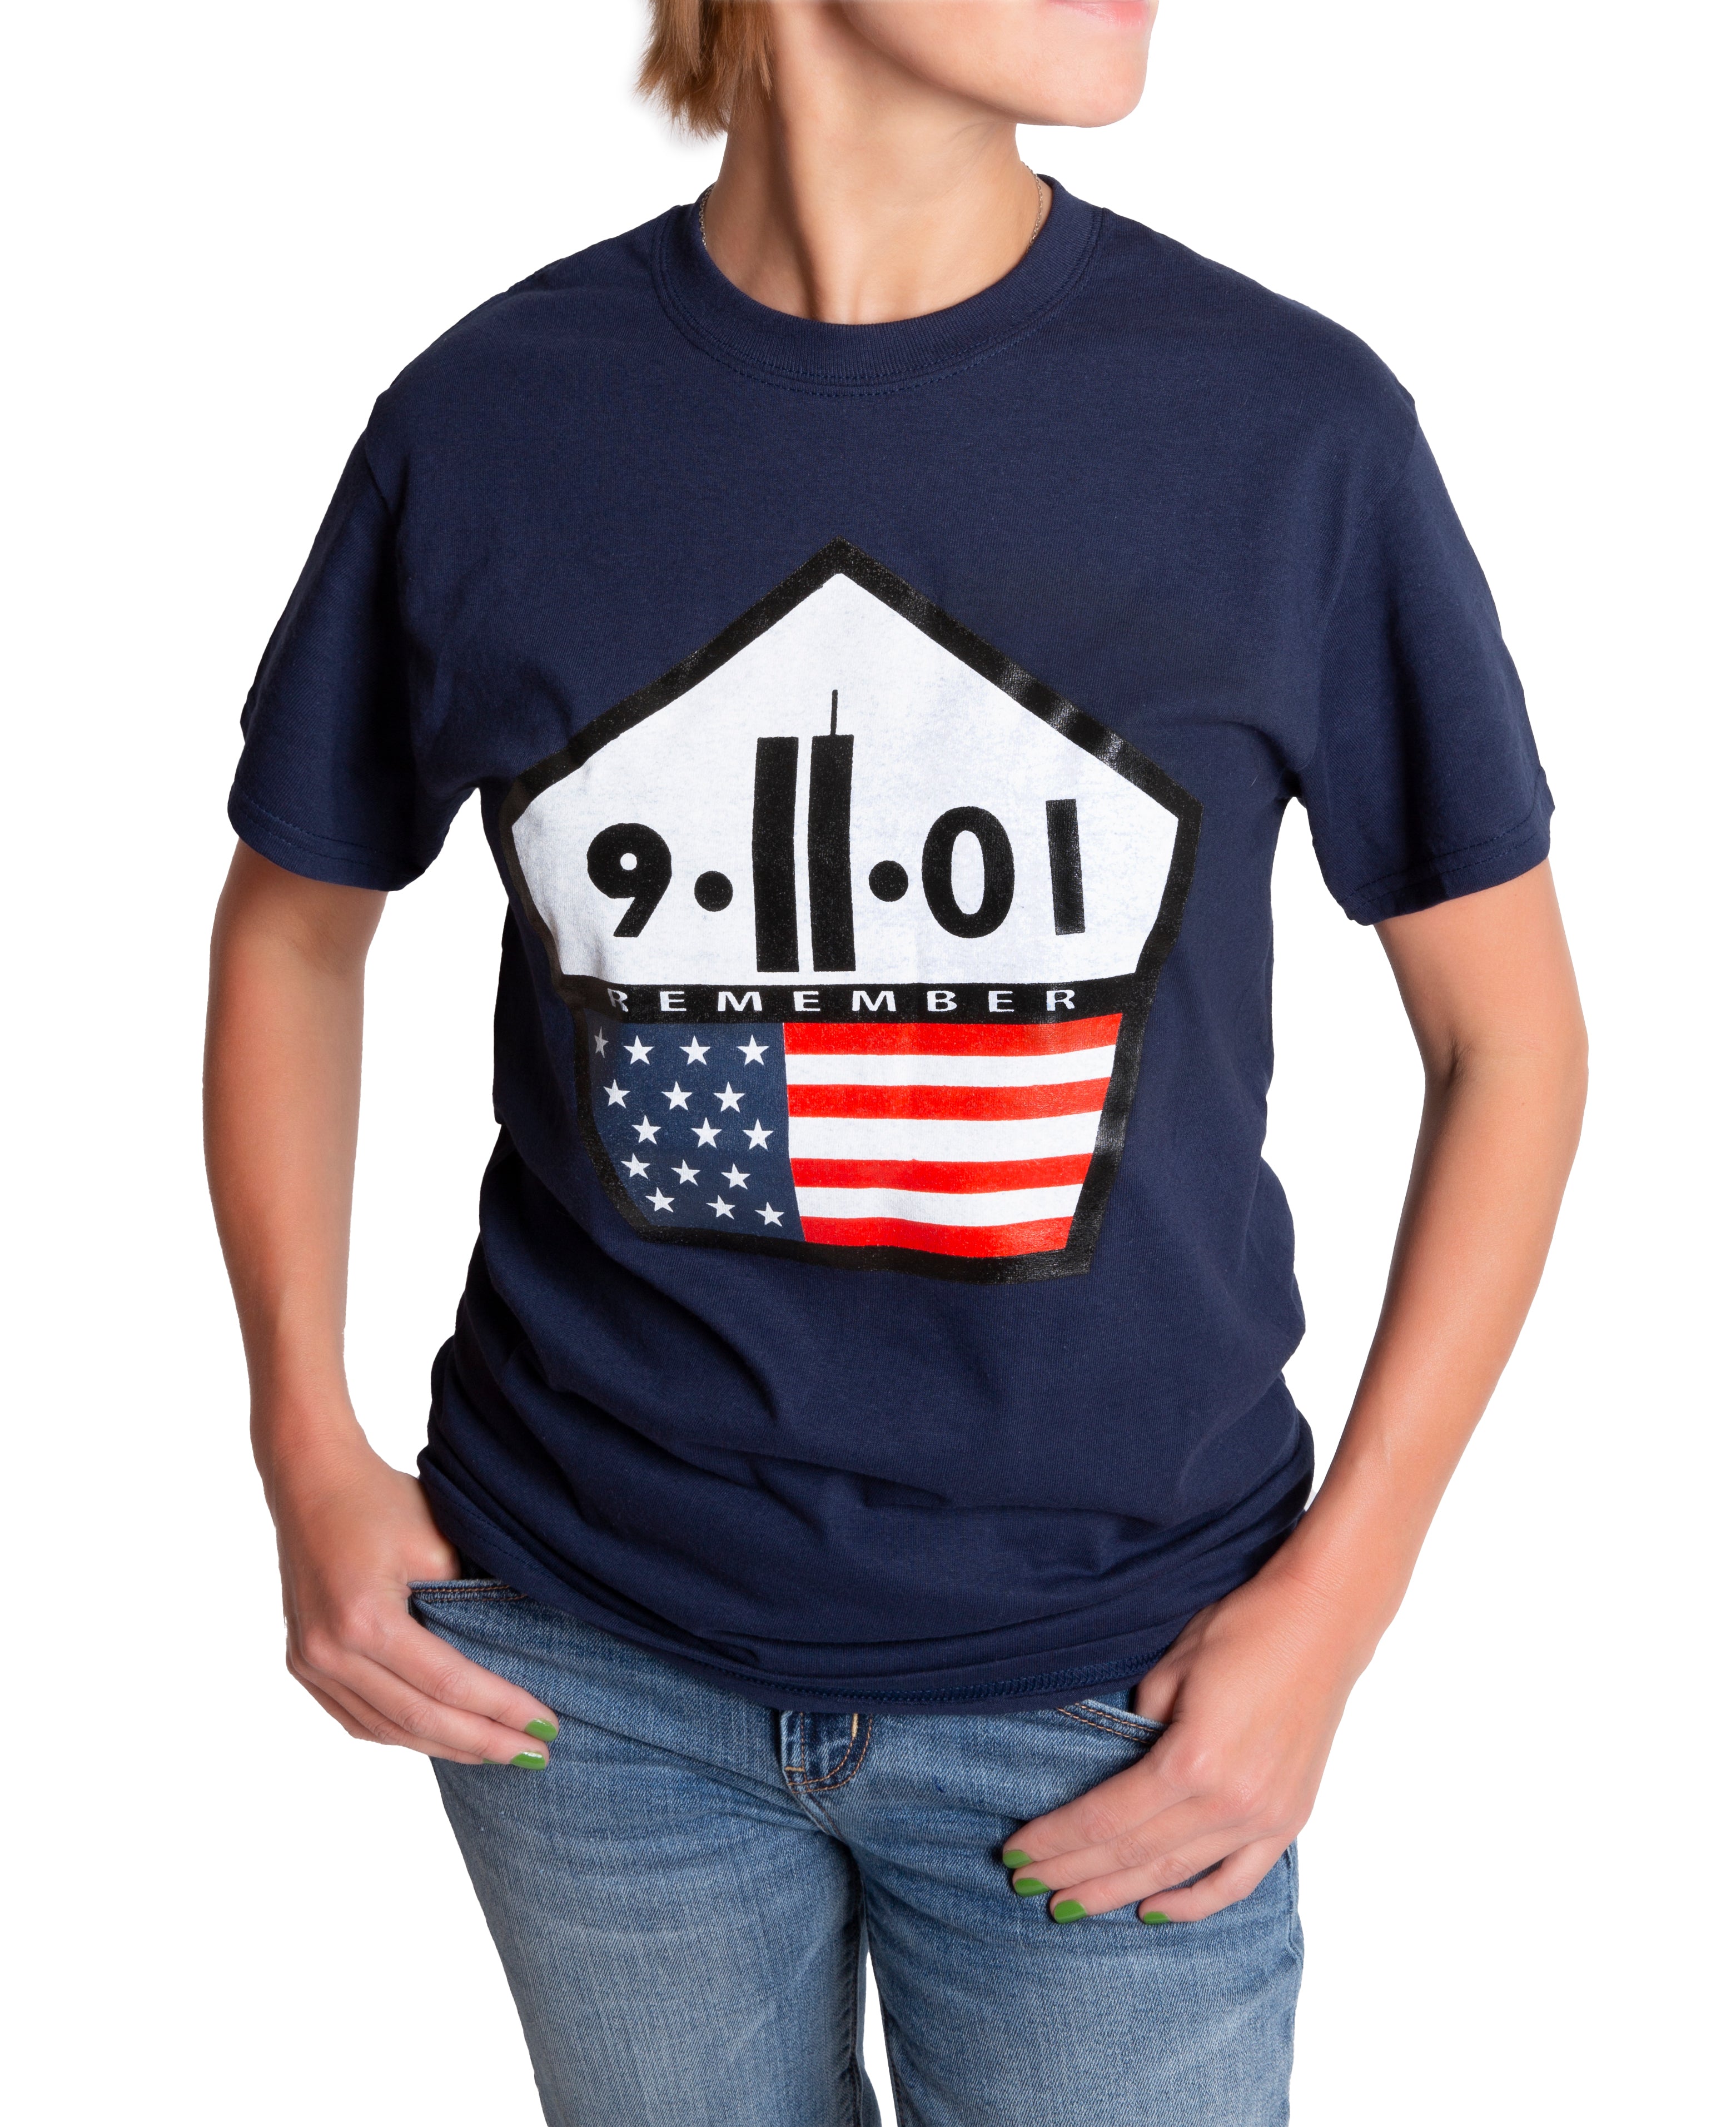 9/11 Memorial T-Shirt